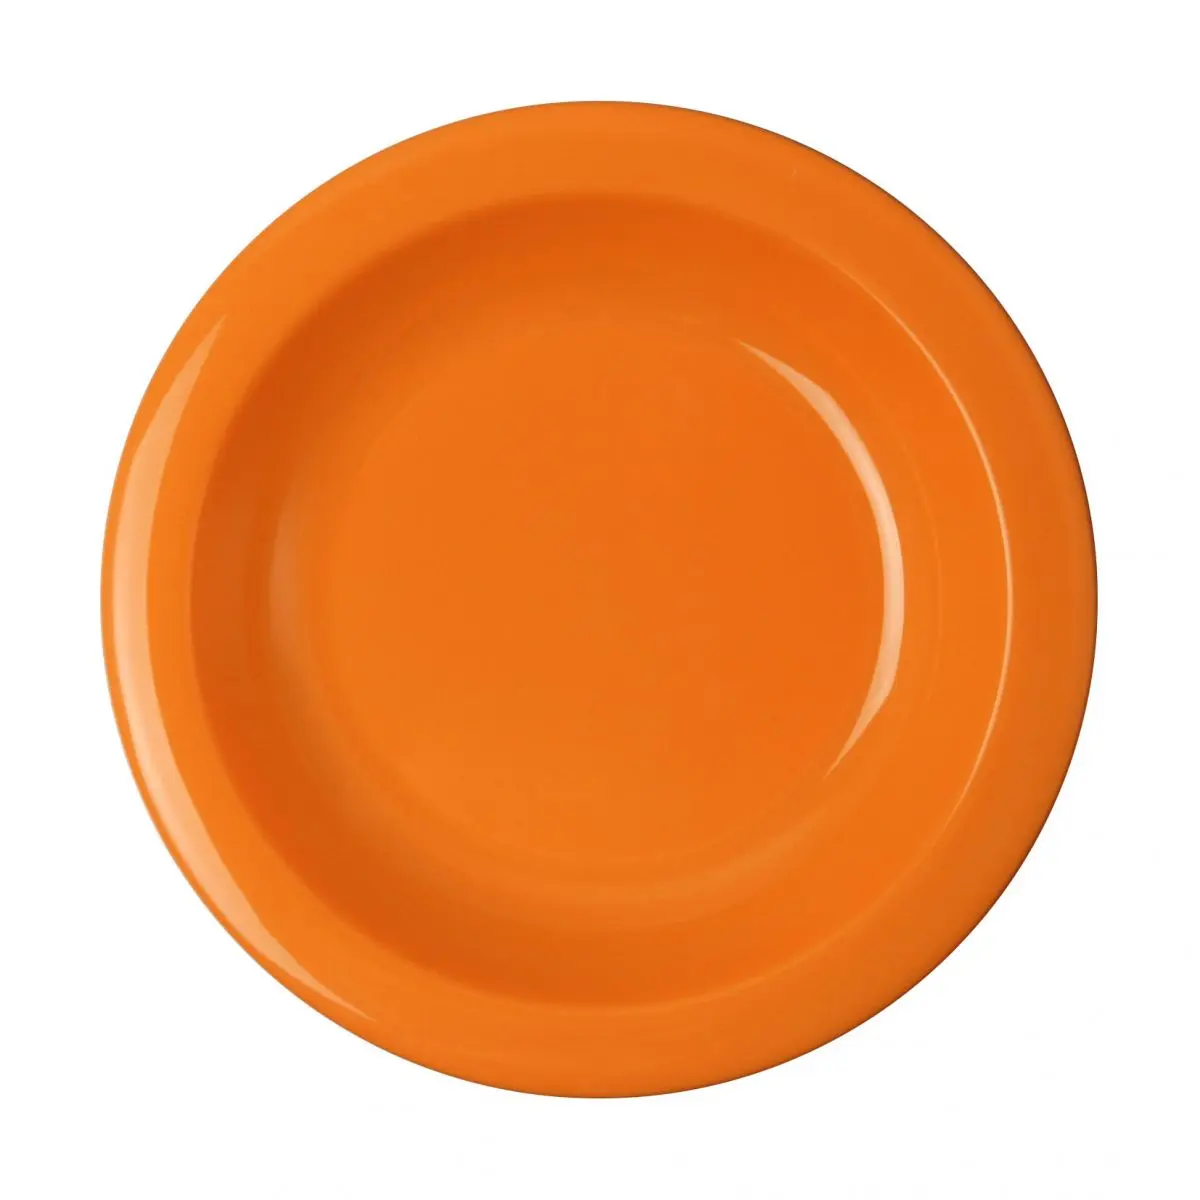 Riad séria PBT - polievkový tanier 21,6 cm, oranžový